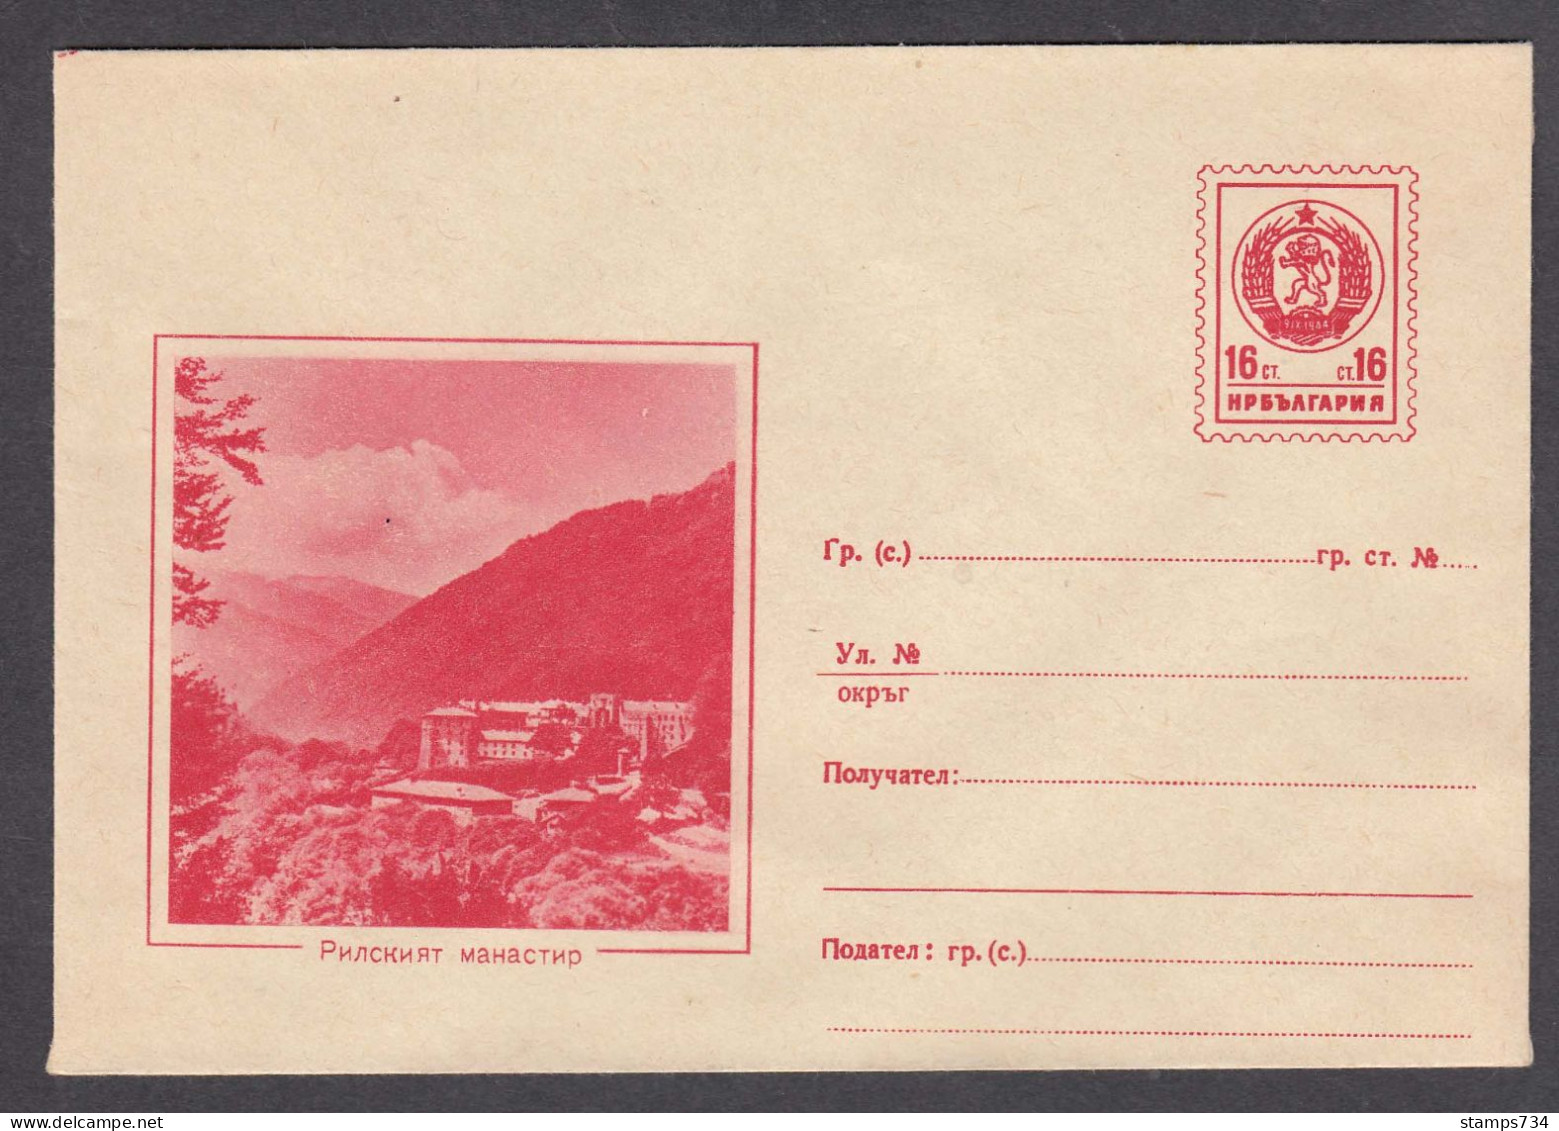 PS 242/1960 - Mint, Rila Monastery - Panorama, Post. Stationery - Bulgaria - Sobres